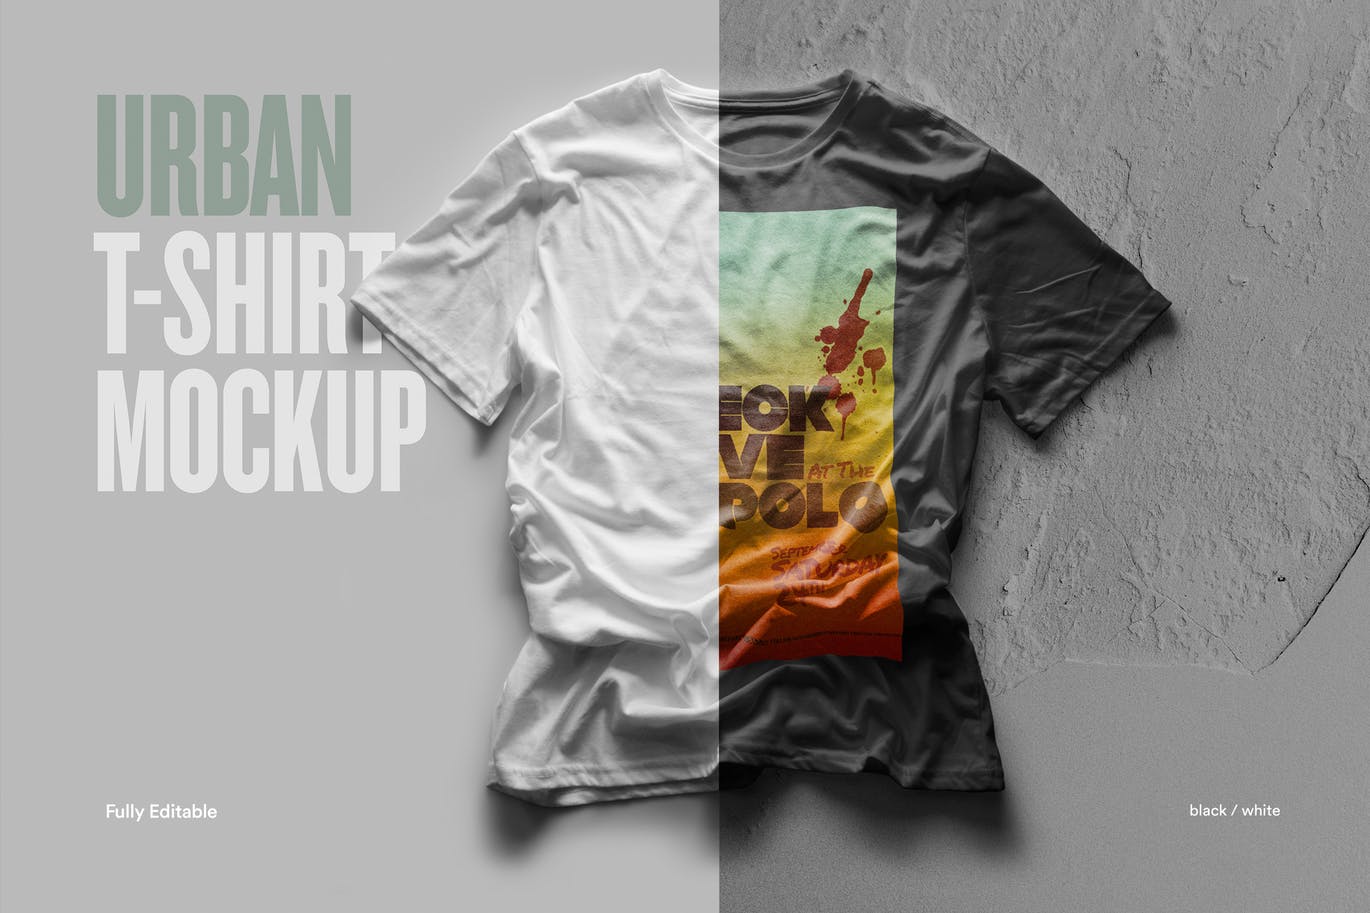 都市风格T恤印花图案设计预览样机16图库精选 Urban T-Shirt Mock-Up插图